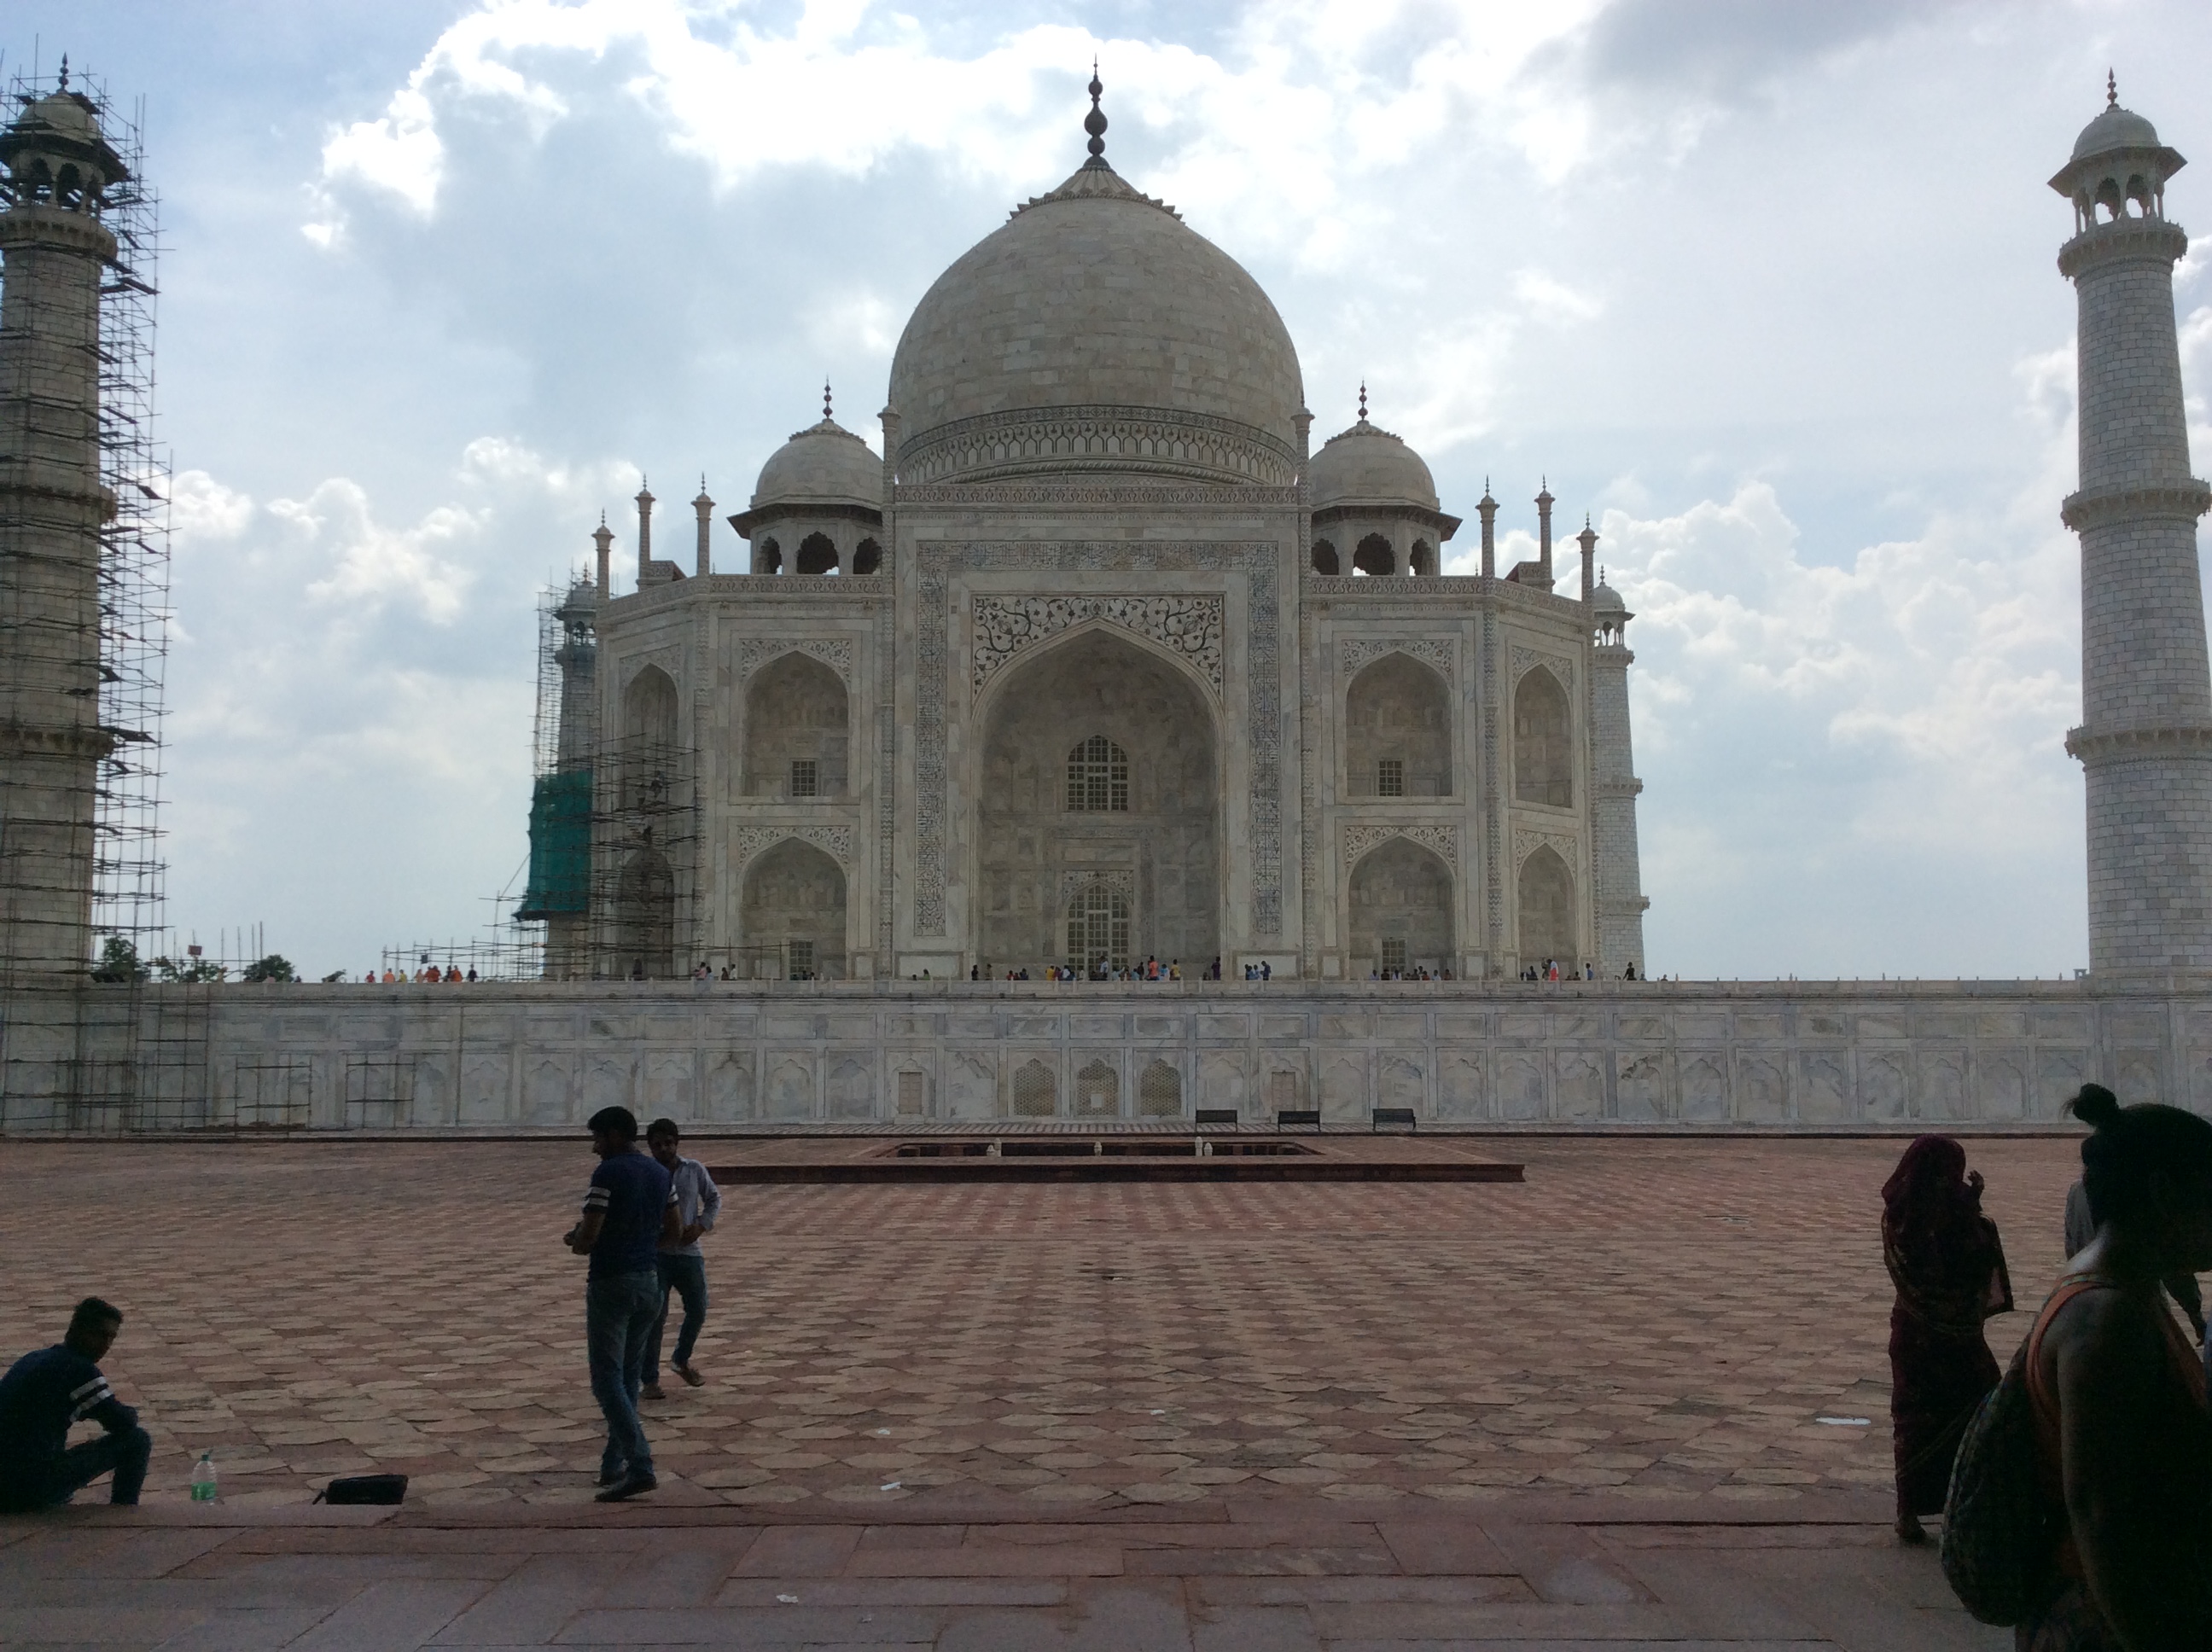 Rechte Seite Des Taj Mahal. Wir stehen in einem auf der Seite offenen , hohen, roten Gebäude, in dem es nach (Männer-)urin stinkt, nicht nach Fledermaus. Ich kann das unterscheiden!!!